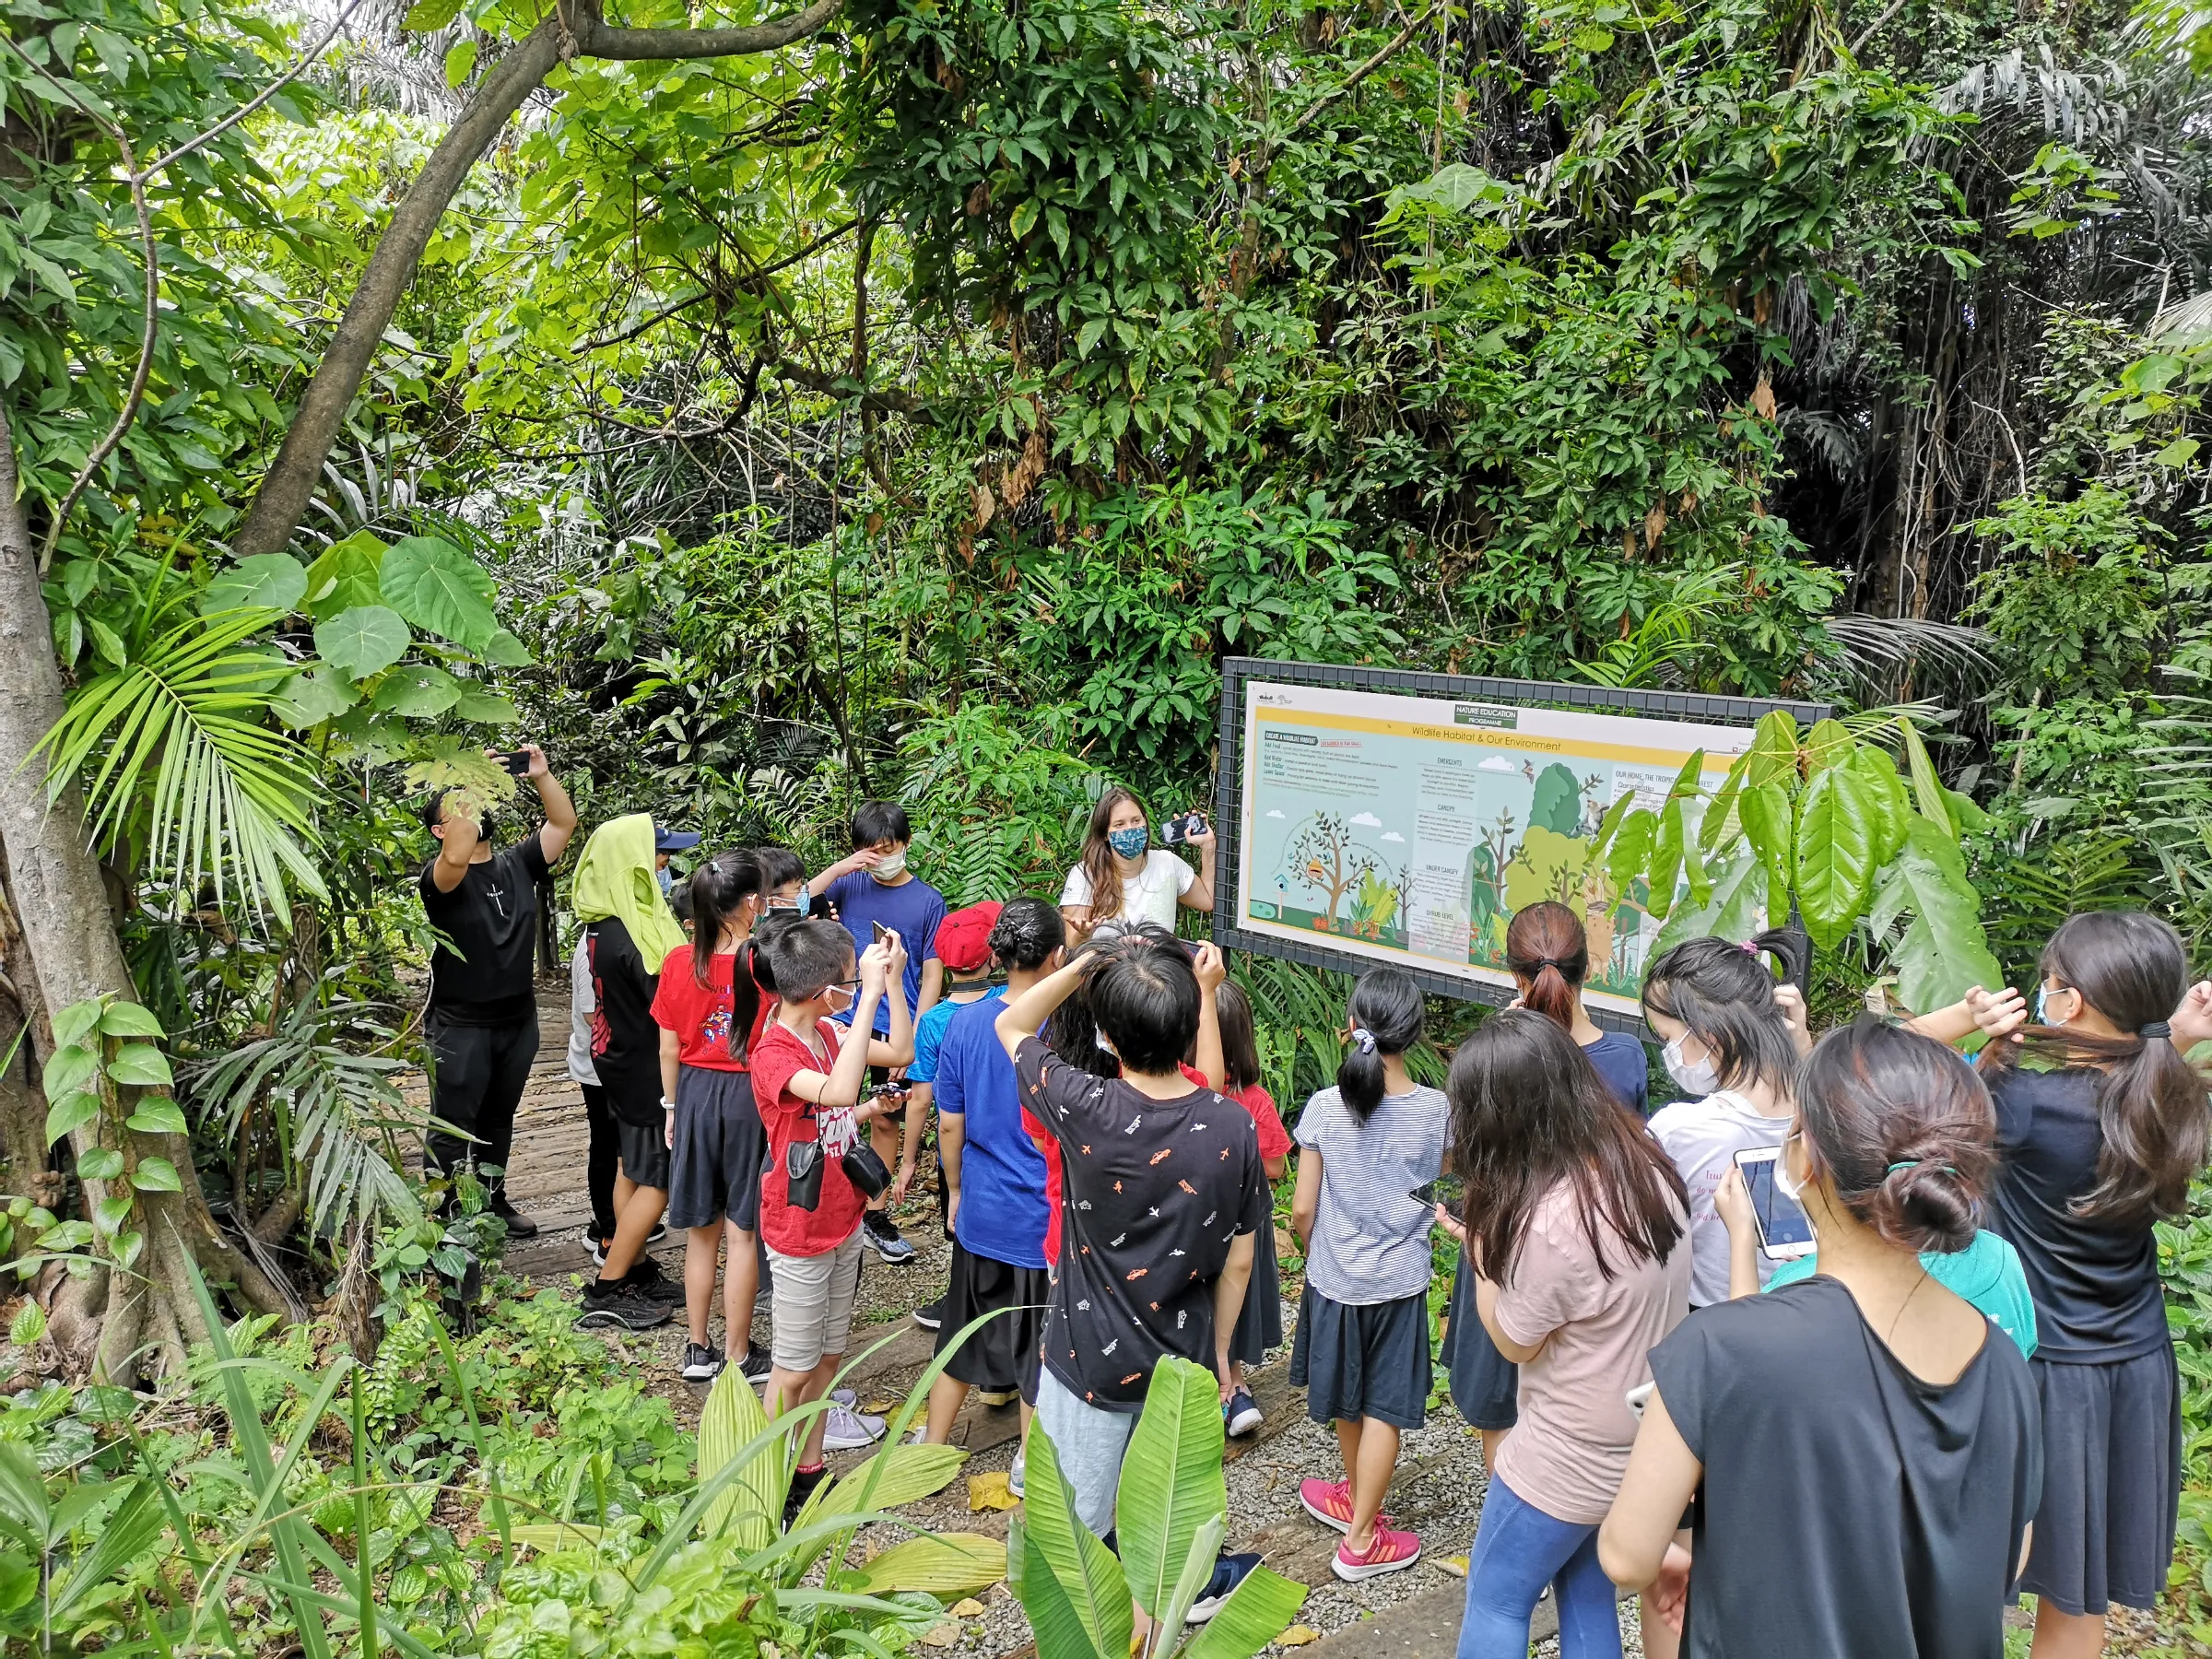 A group look at a nature education program sponsored by a bank at Kuala Lumpur's Taman Tugu